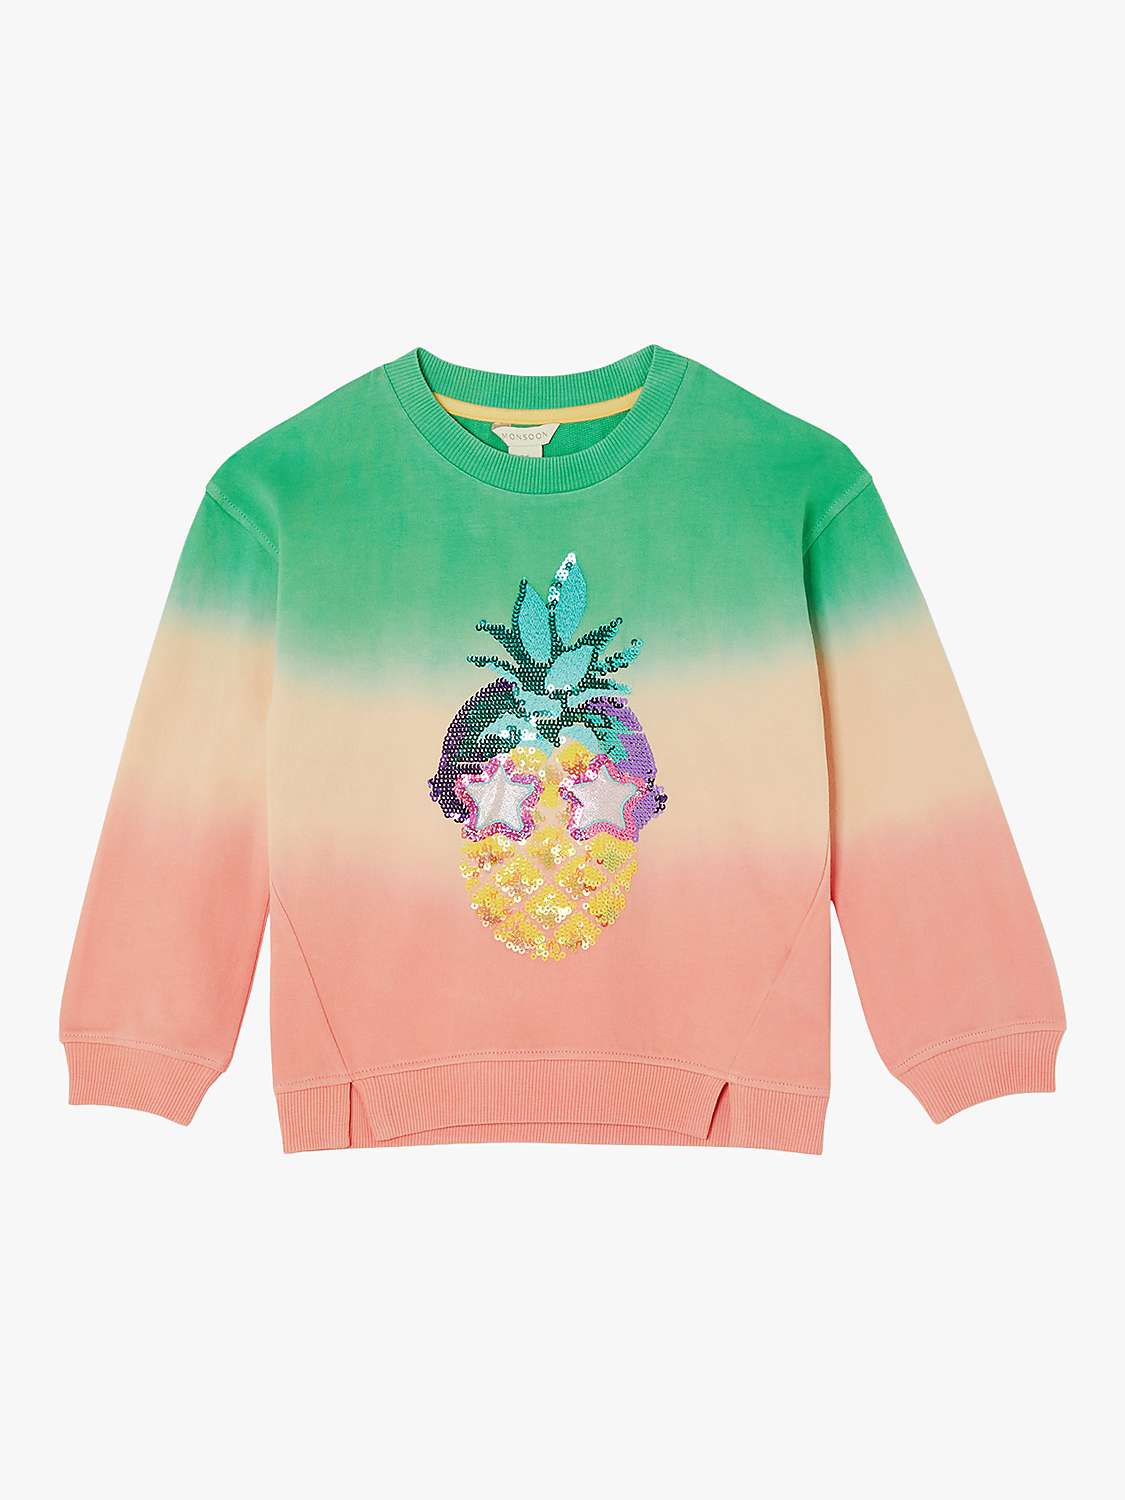 Buy Monsoon Kids' Fun Pineapple Sequin Ombre Sweatshirt, Green Online at johnlewis.com